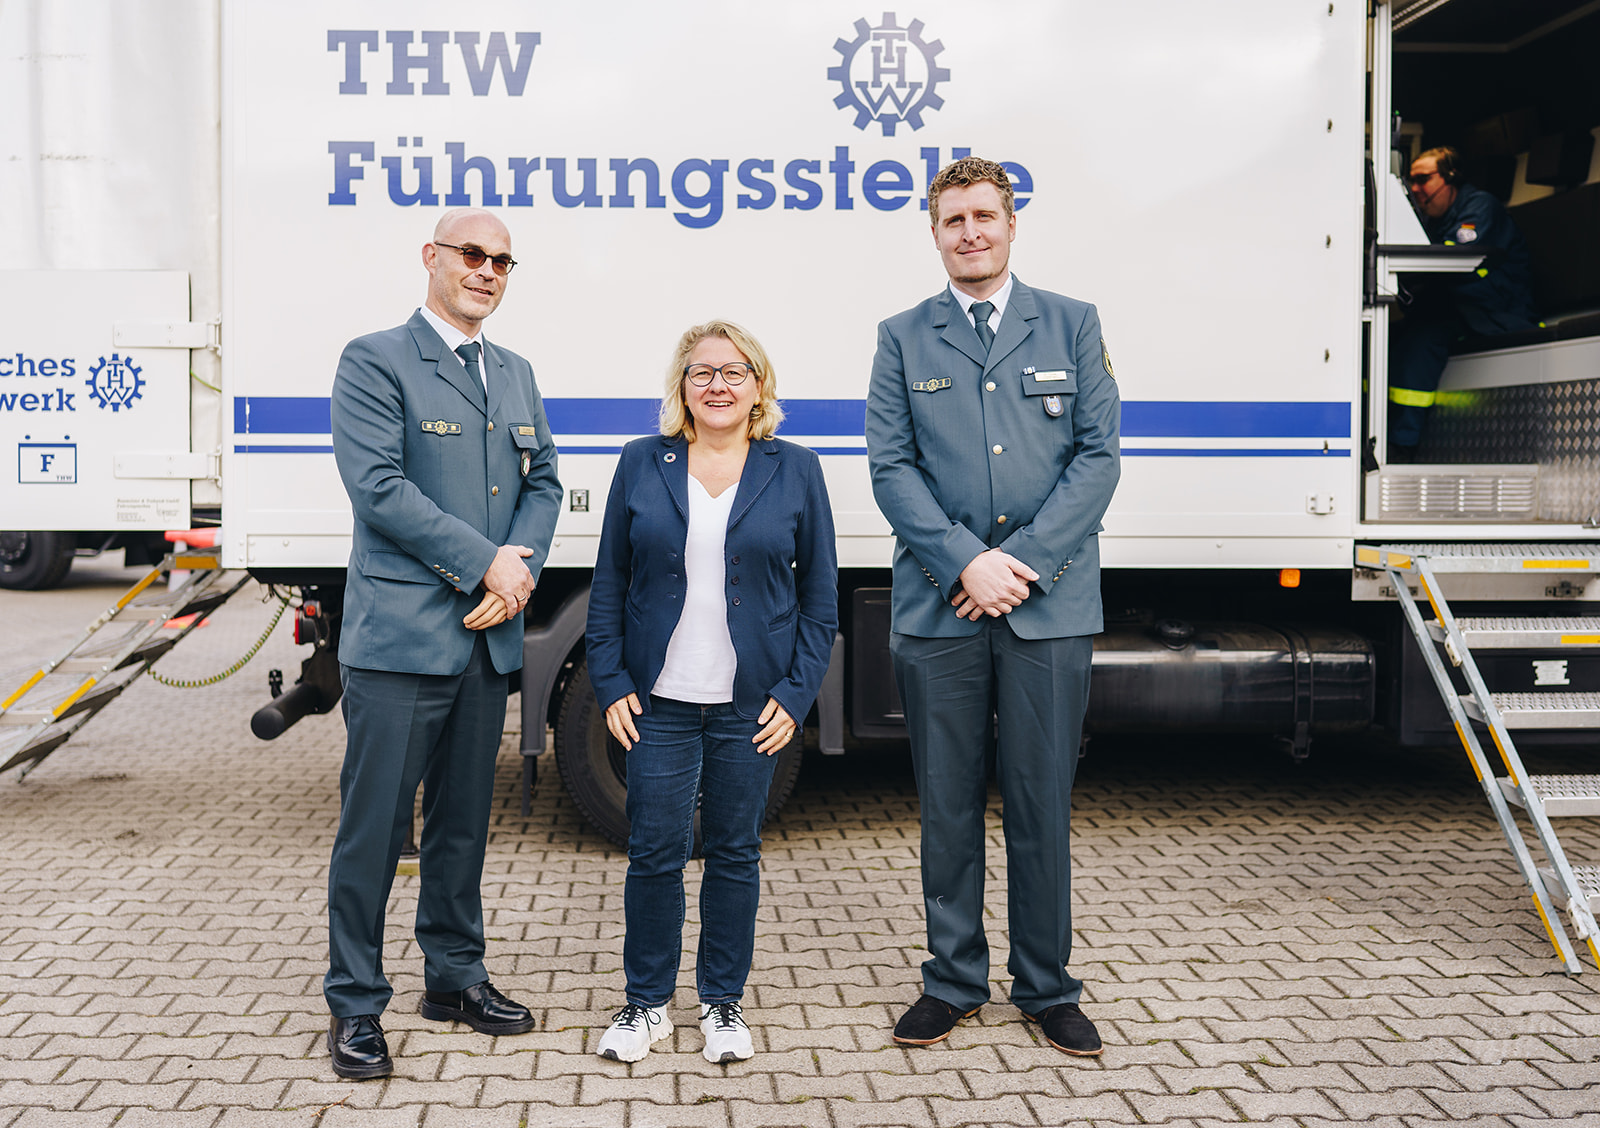 Svenja Schulze besucht Fuhrpark zum 70-jährigen Jubiläum des THW Münster: „Wir müssen den Bevölkerungsschutz stärken“